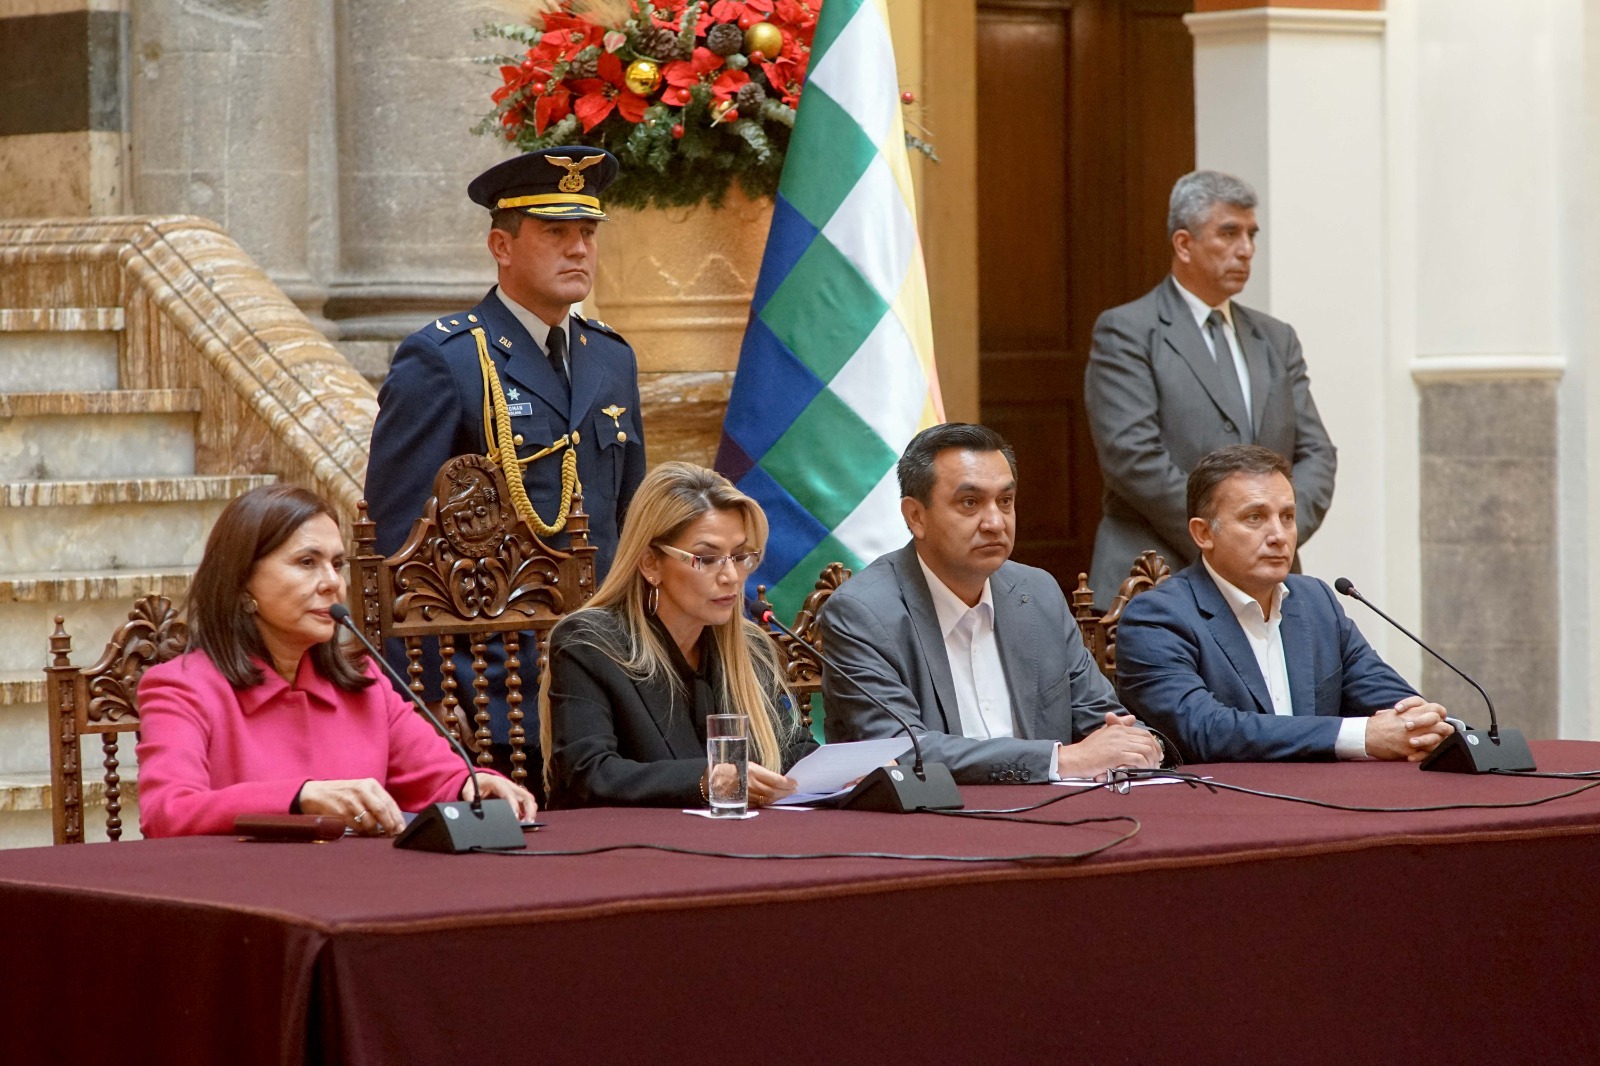 El gobierno de facto de Bolivia declara persona "no grata" a embajadora de México y Cónsul de España los expulsa del país